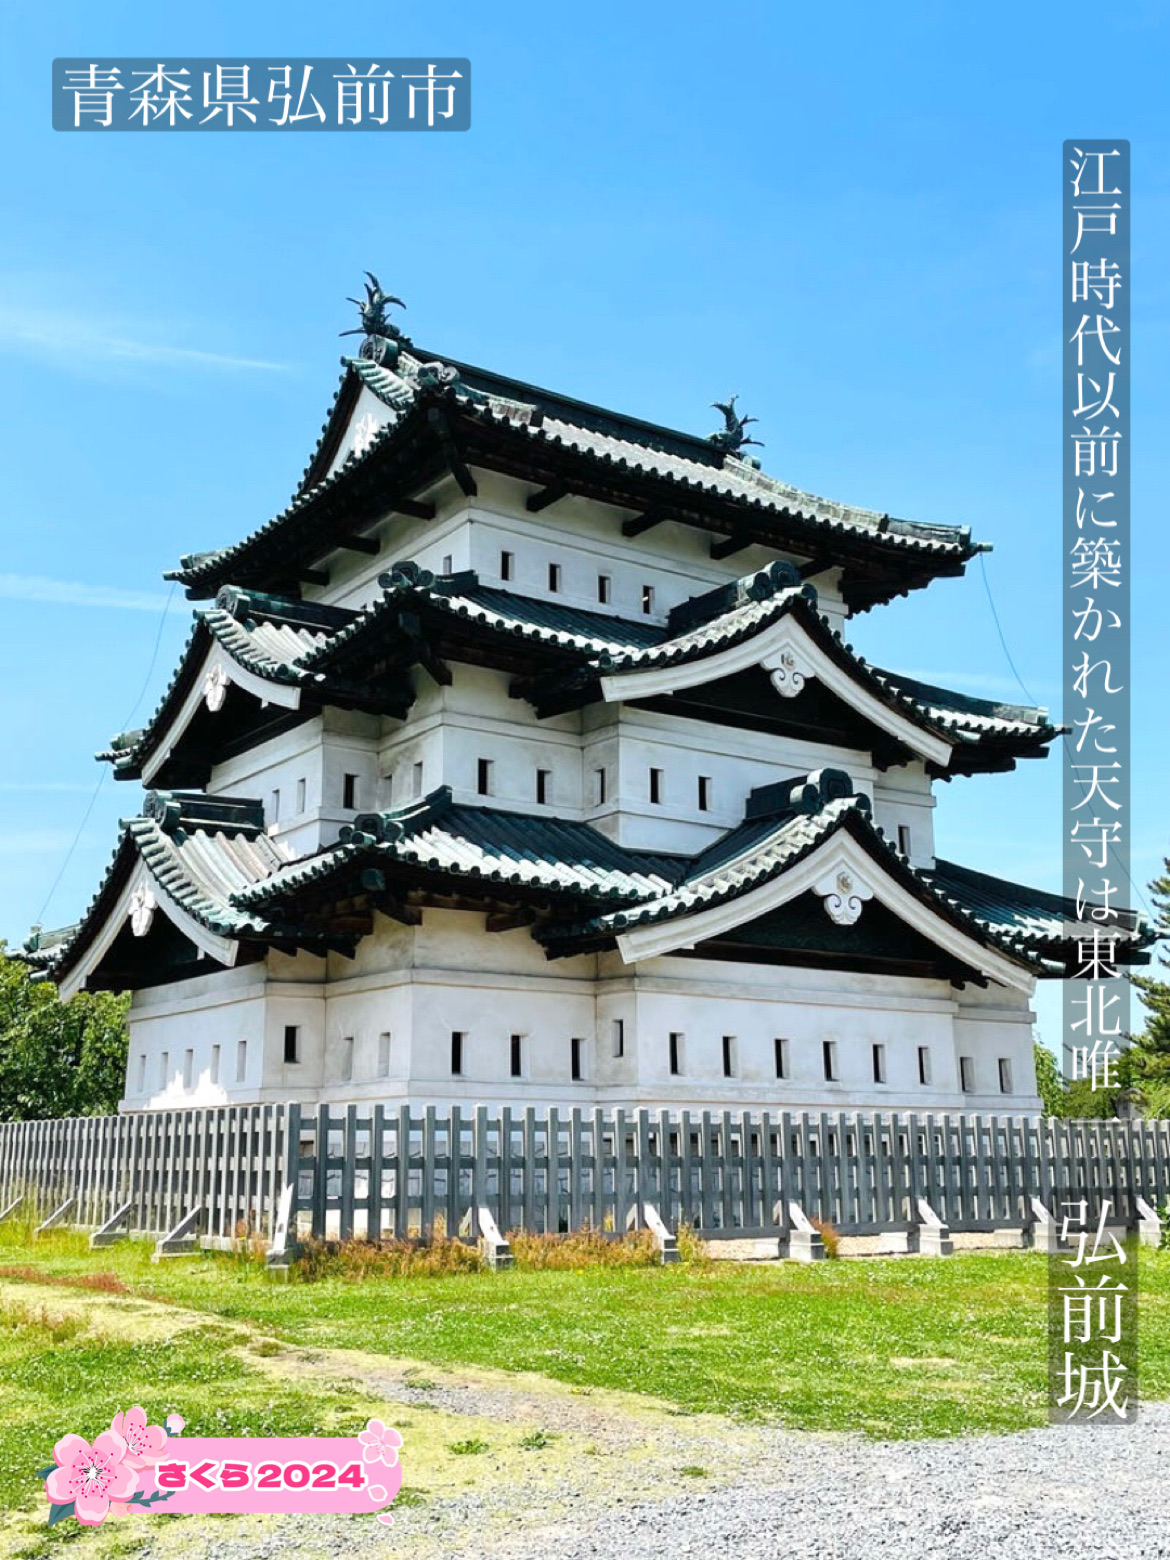 【弘前城/青森县】江户时代以前建造的天守是东北唯一一座